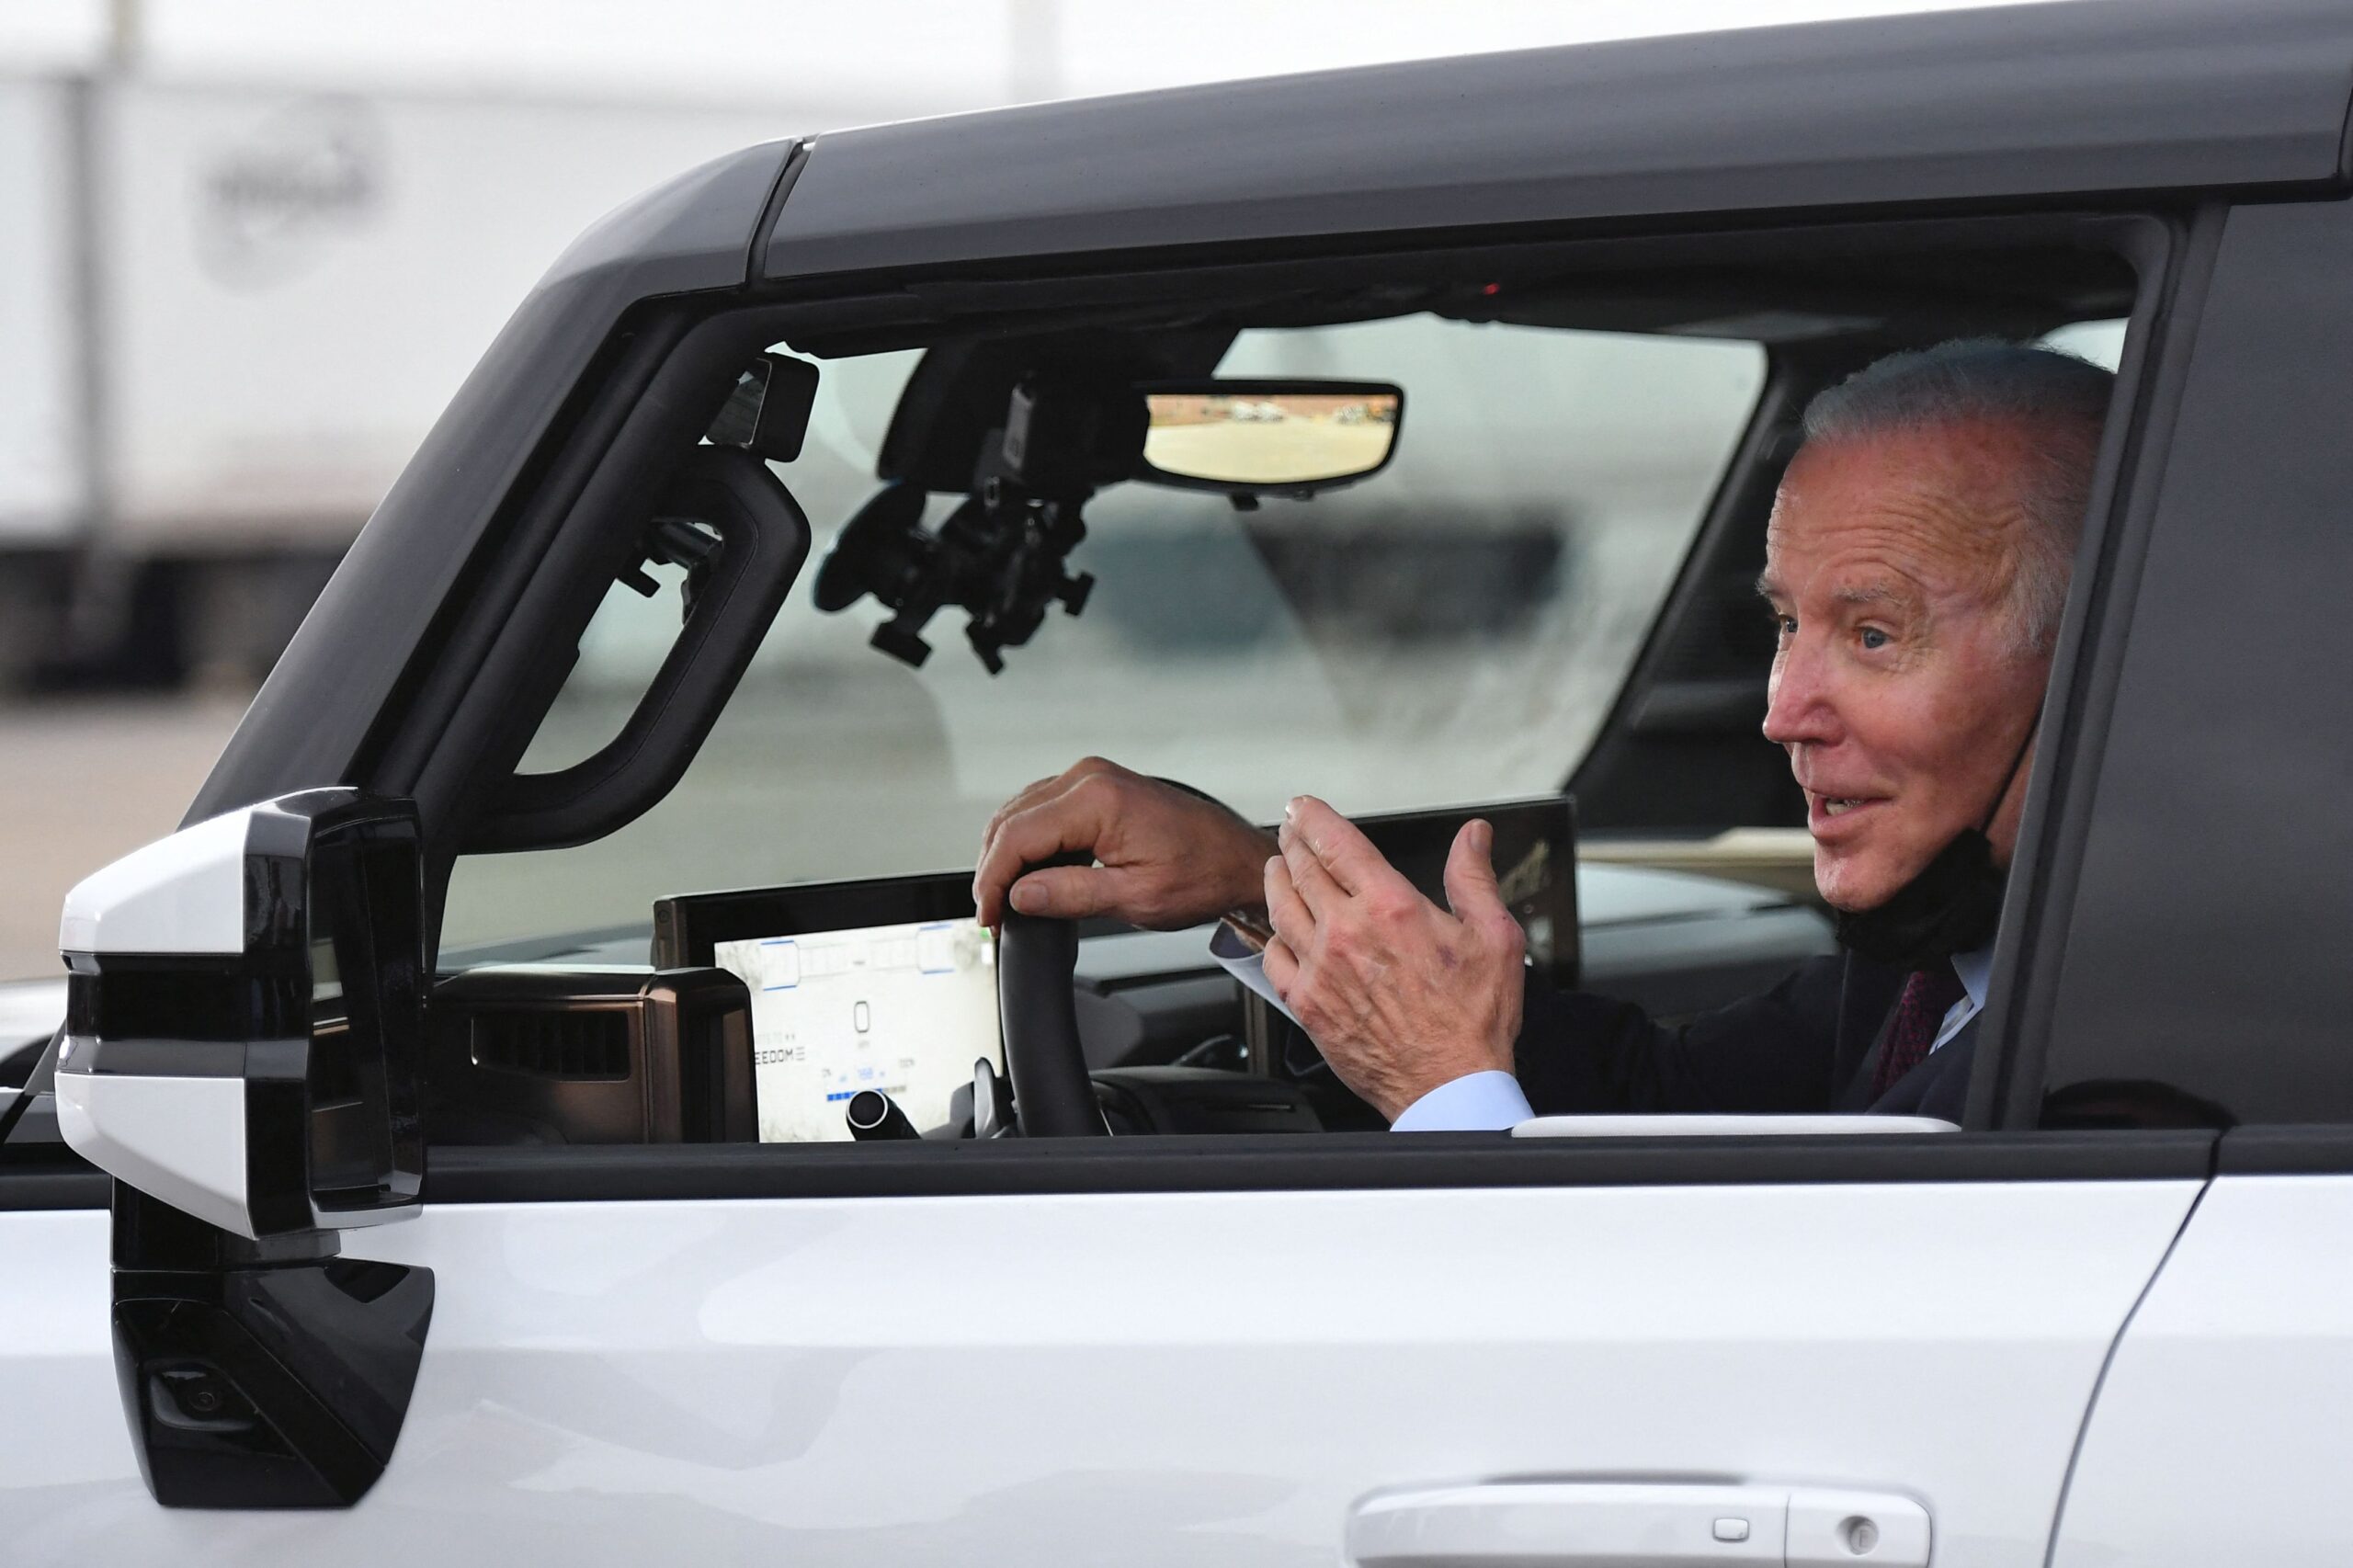 Auto Union delays endorsing Biden over EV policies.